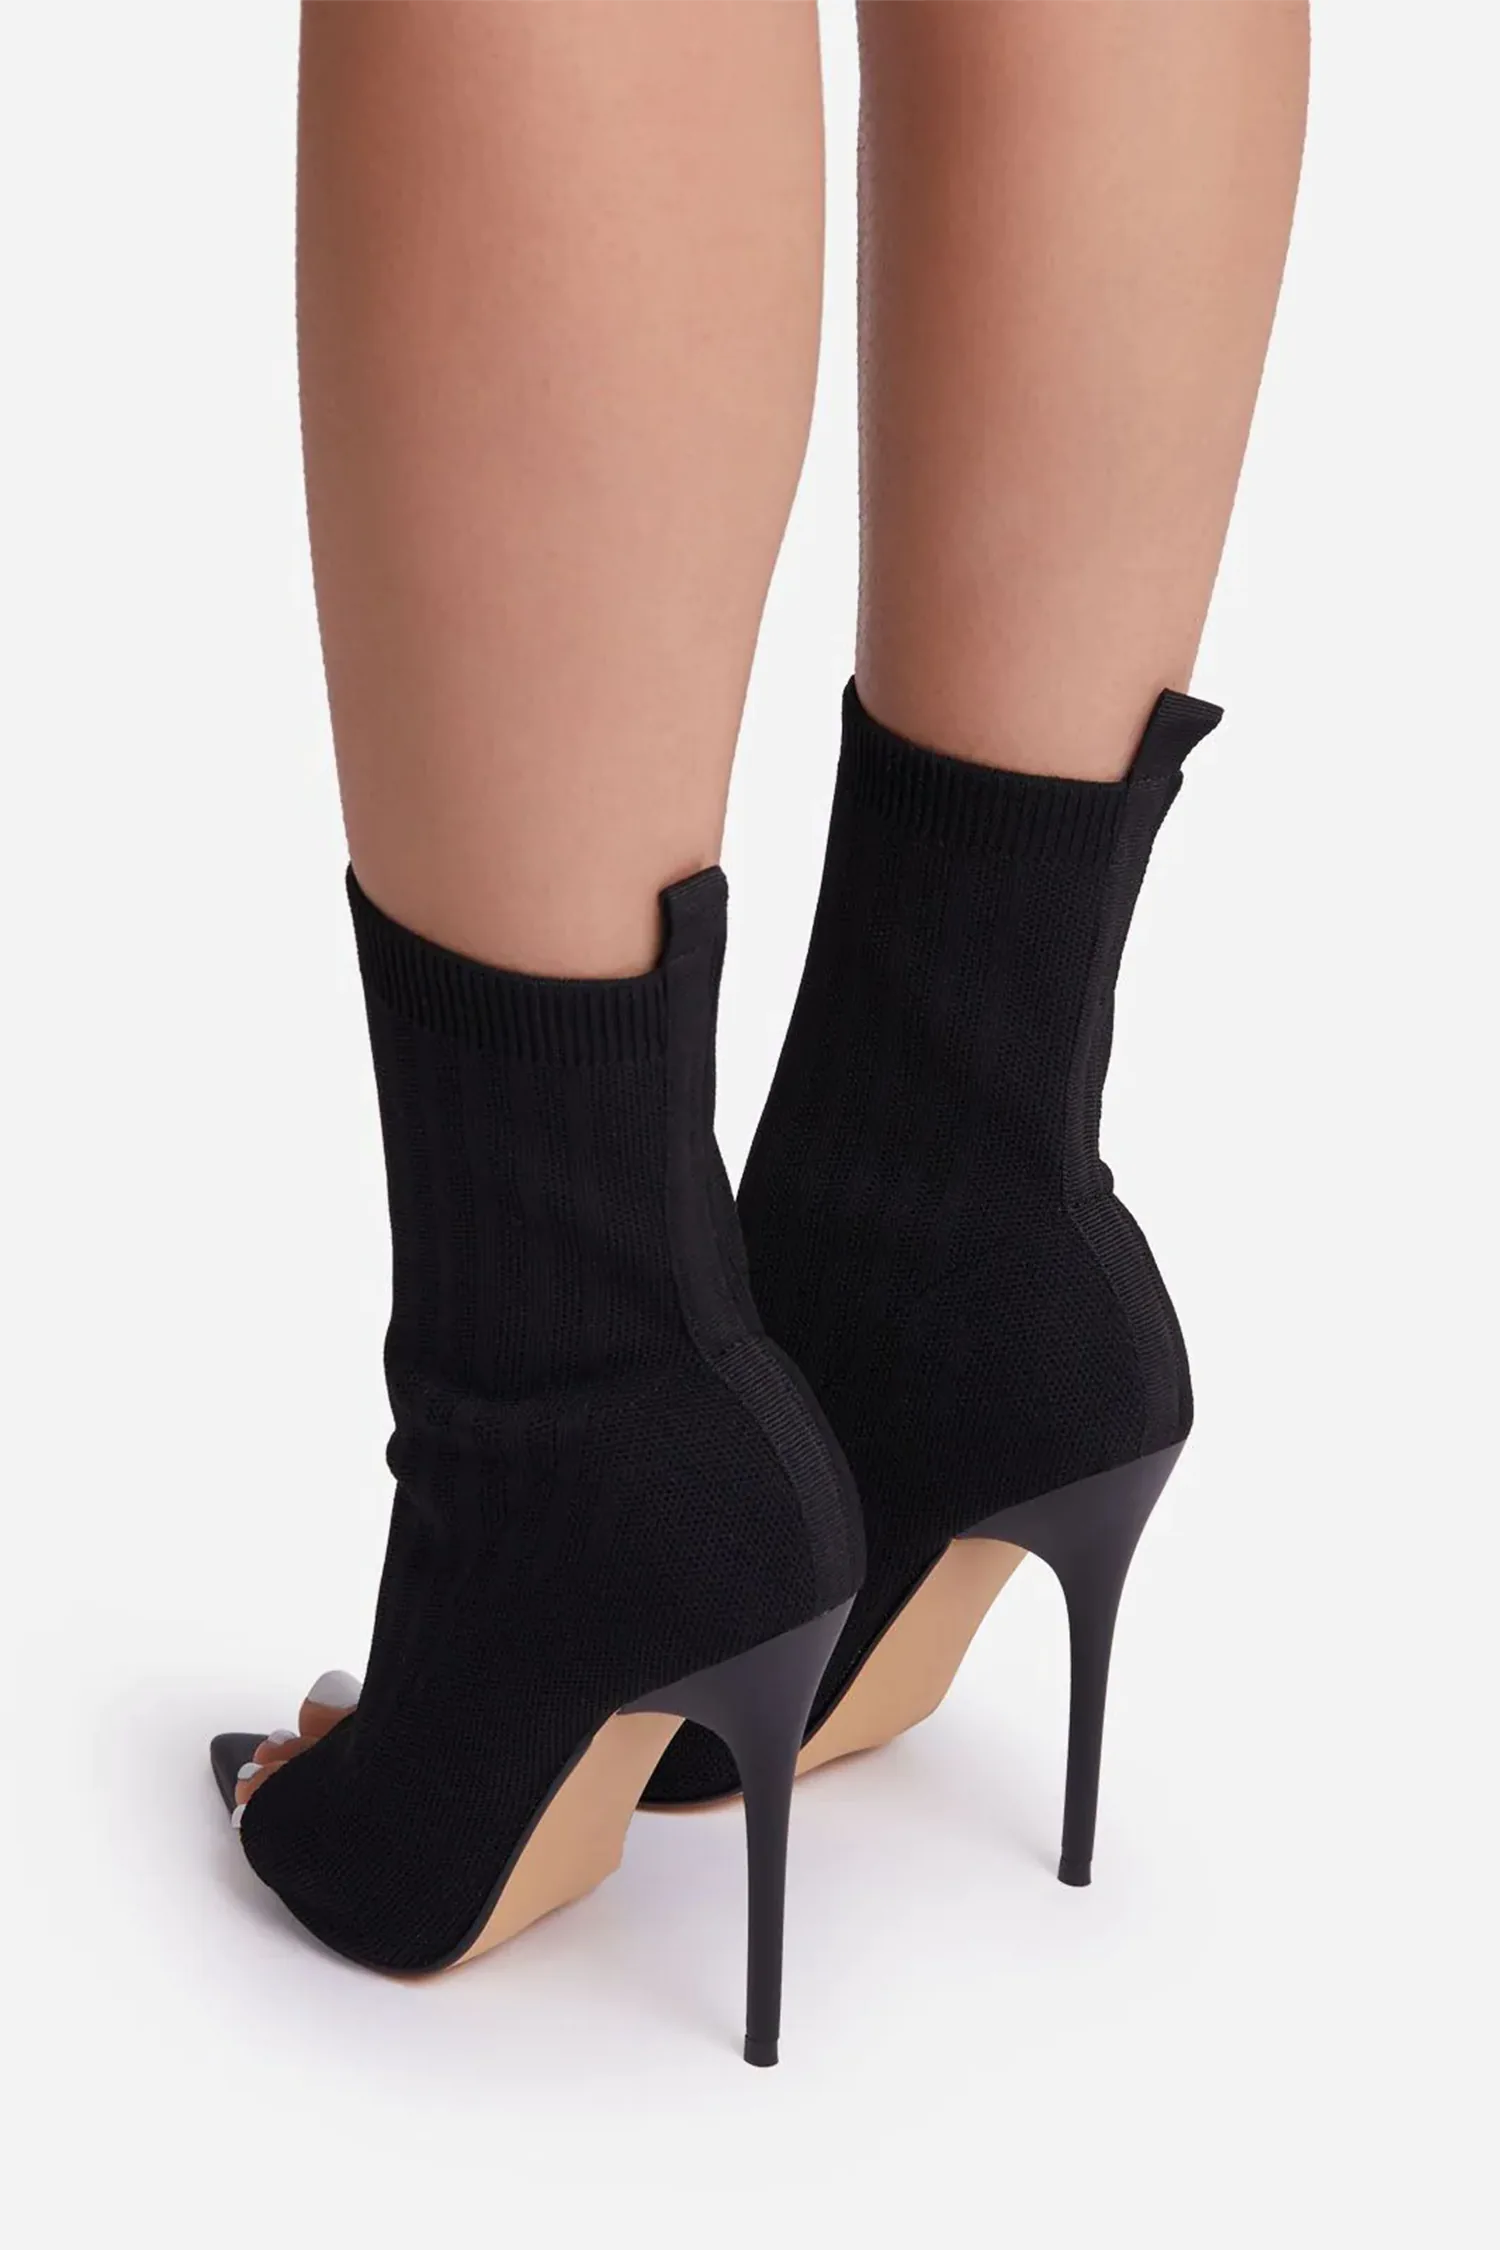 Black Peep Toe Stiletto Heels Ankle Sock Boots